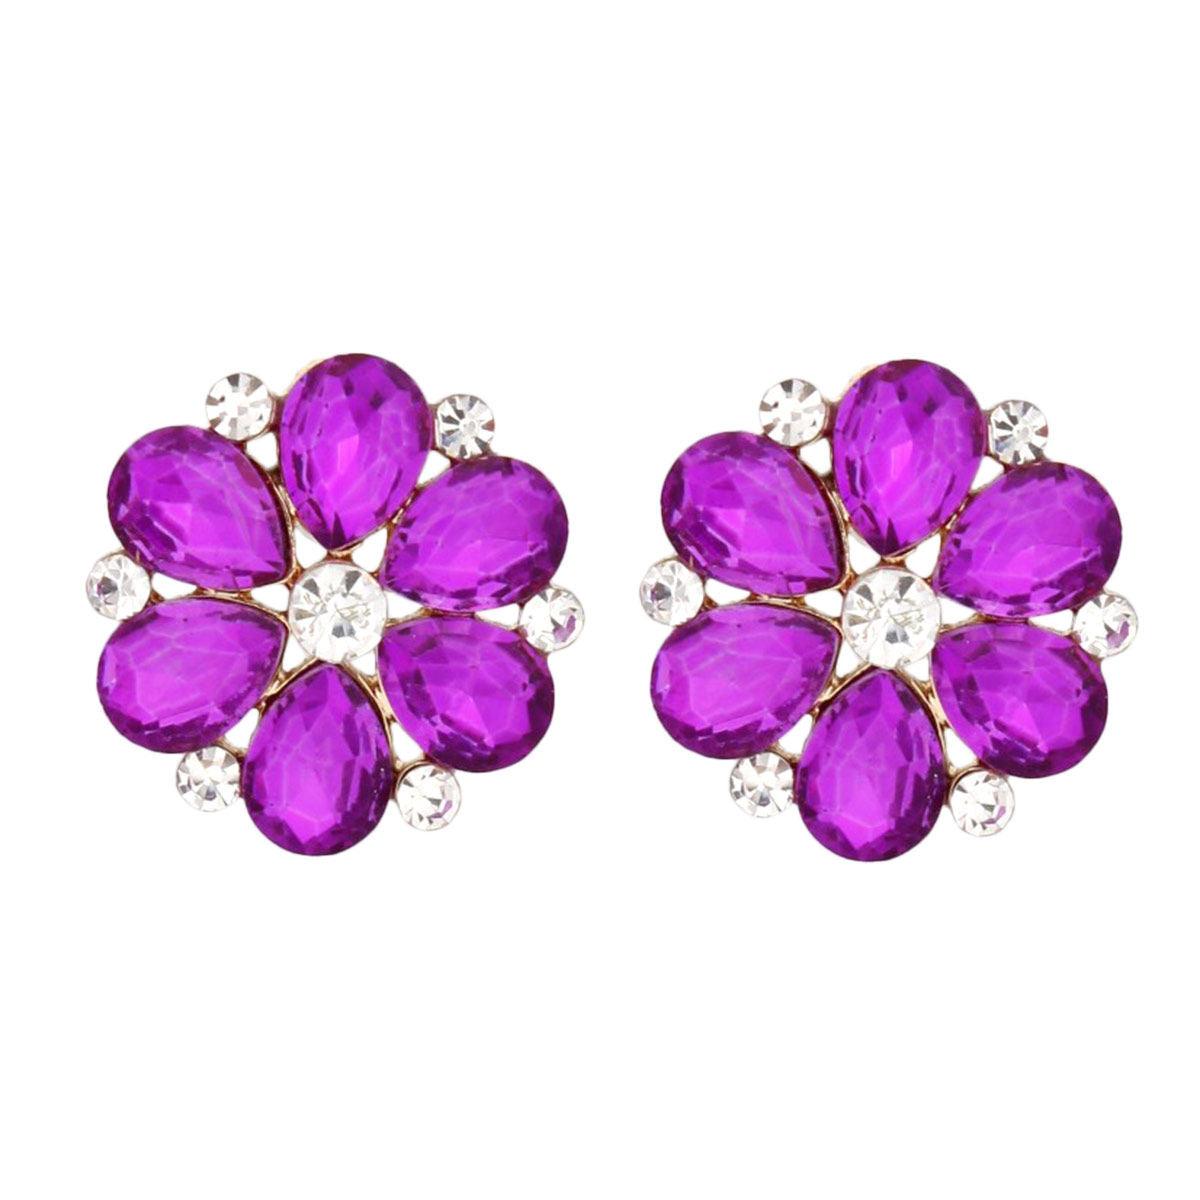 Purple Cluster Flower Stud Earrings - Fashion Jewelry